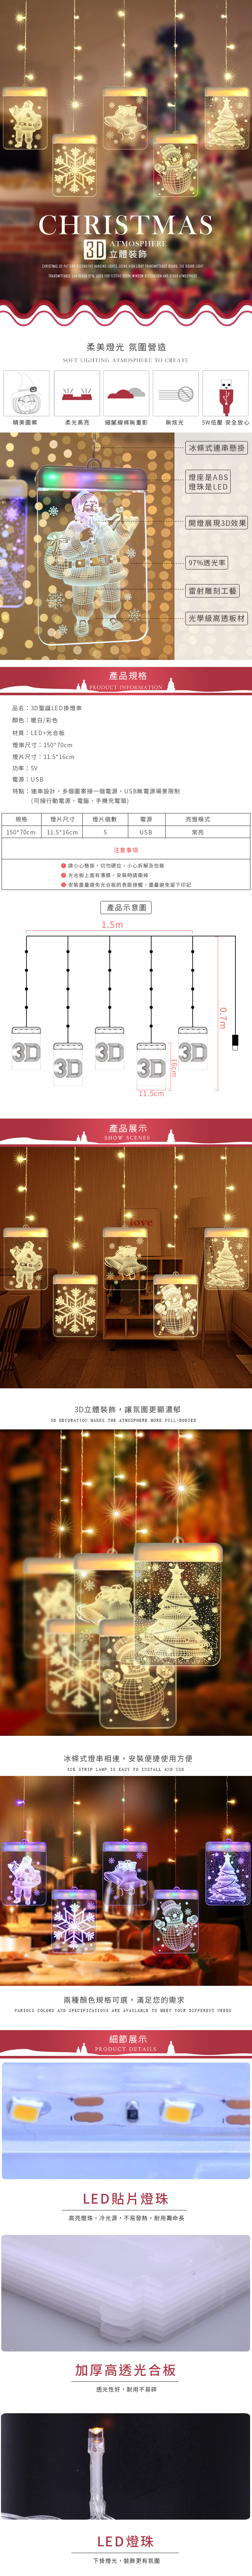 創意小物館 3D聖誕LED掛燈串 彩色麋鹿聖誕